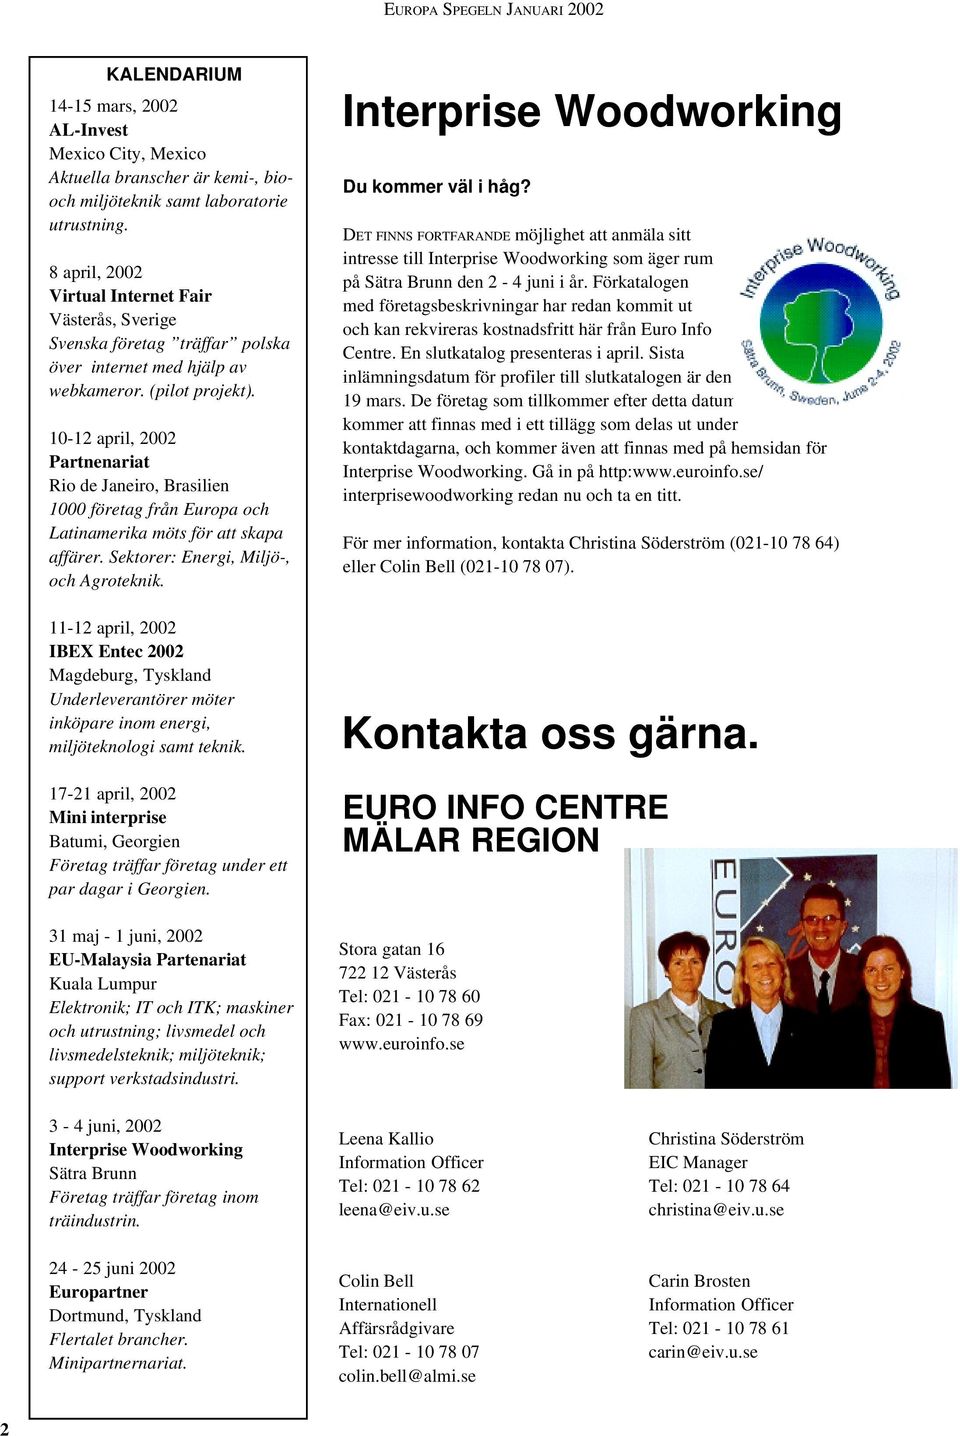 10-12 april, 2002 Partnenariat Rio de Janeiro, Brasilien 1000 företag från Europa och Latinamerika möts för att skapa affärer. Sektorer: Energi, Miljö-, och Agroteknik.